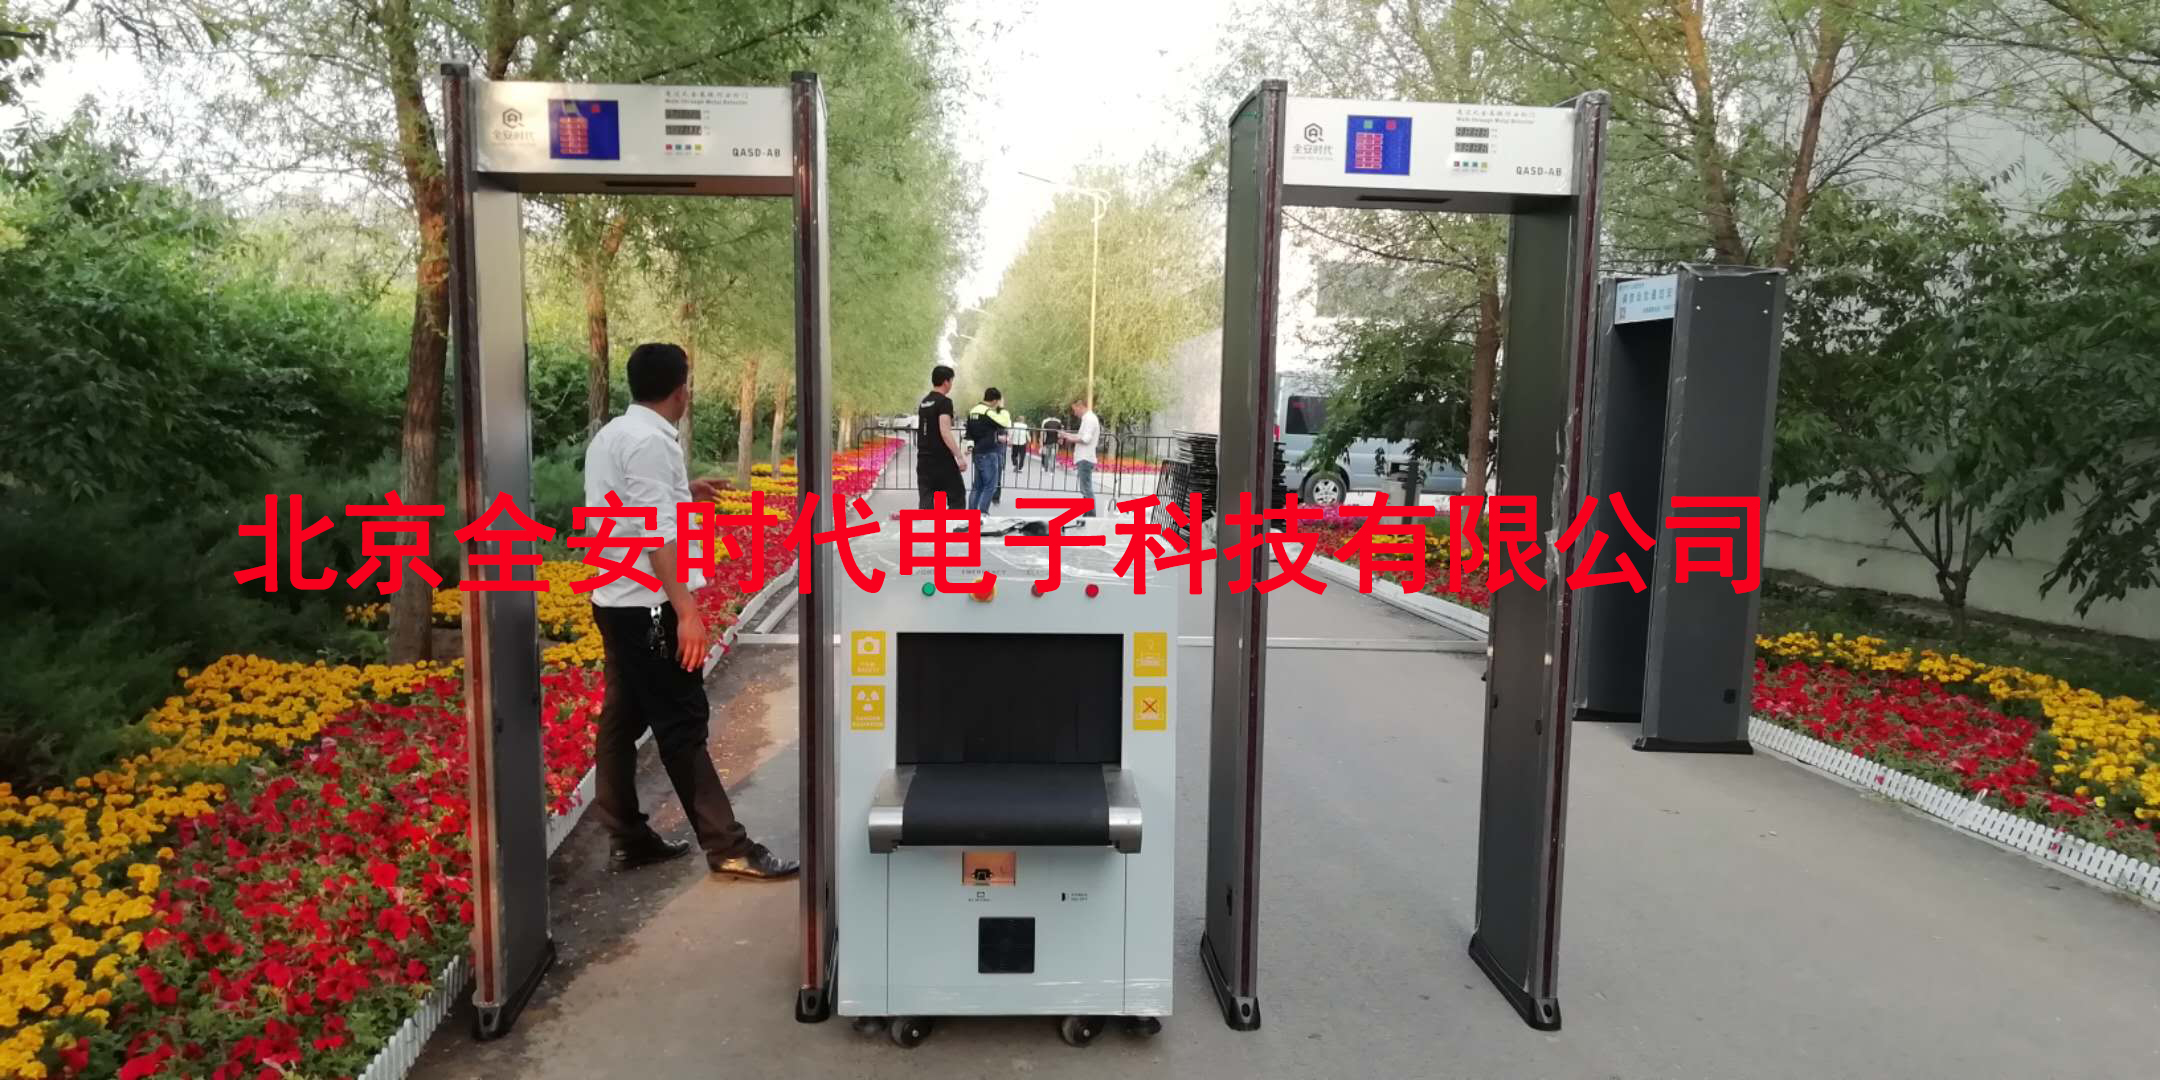 北京租赁安检机测温安检门安检设备